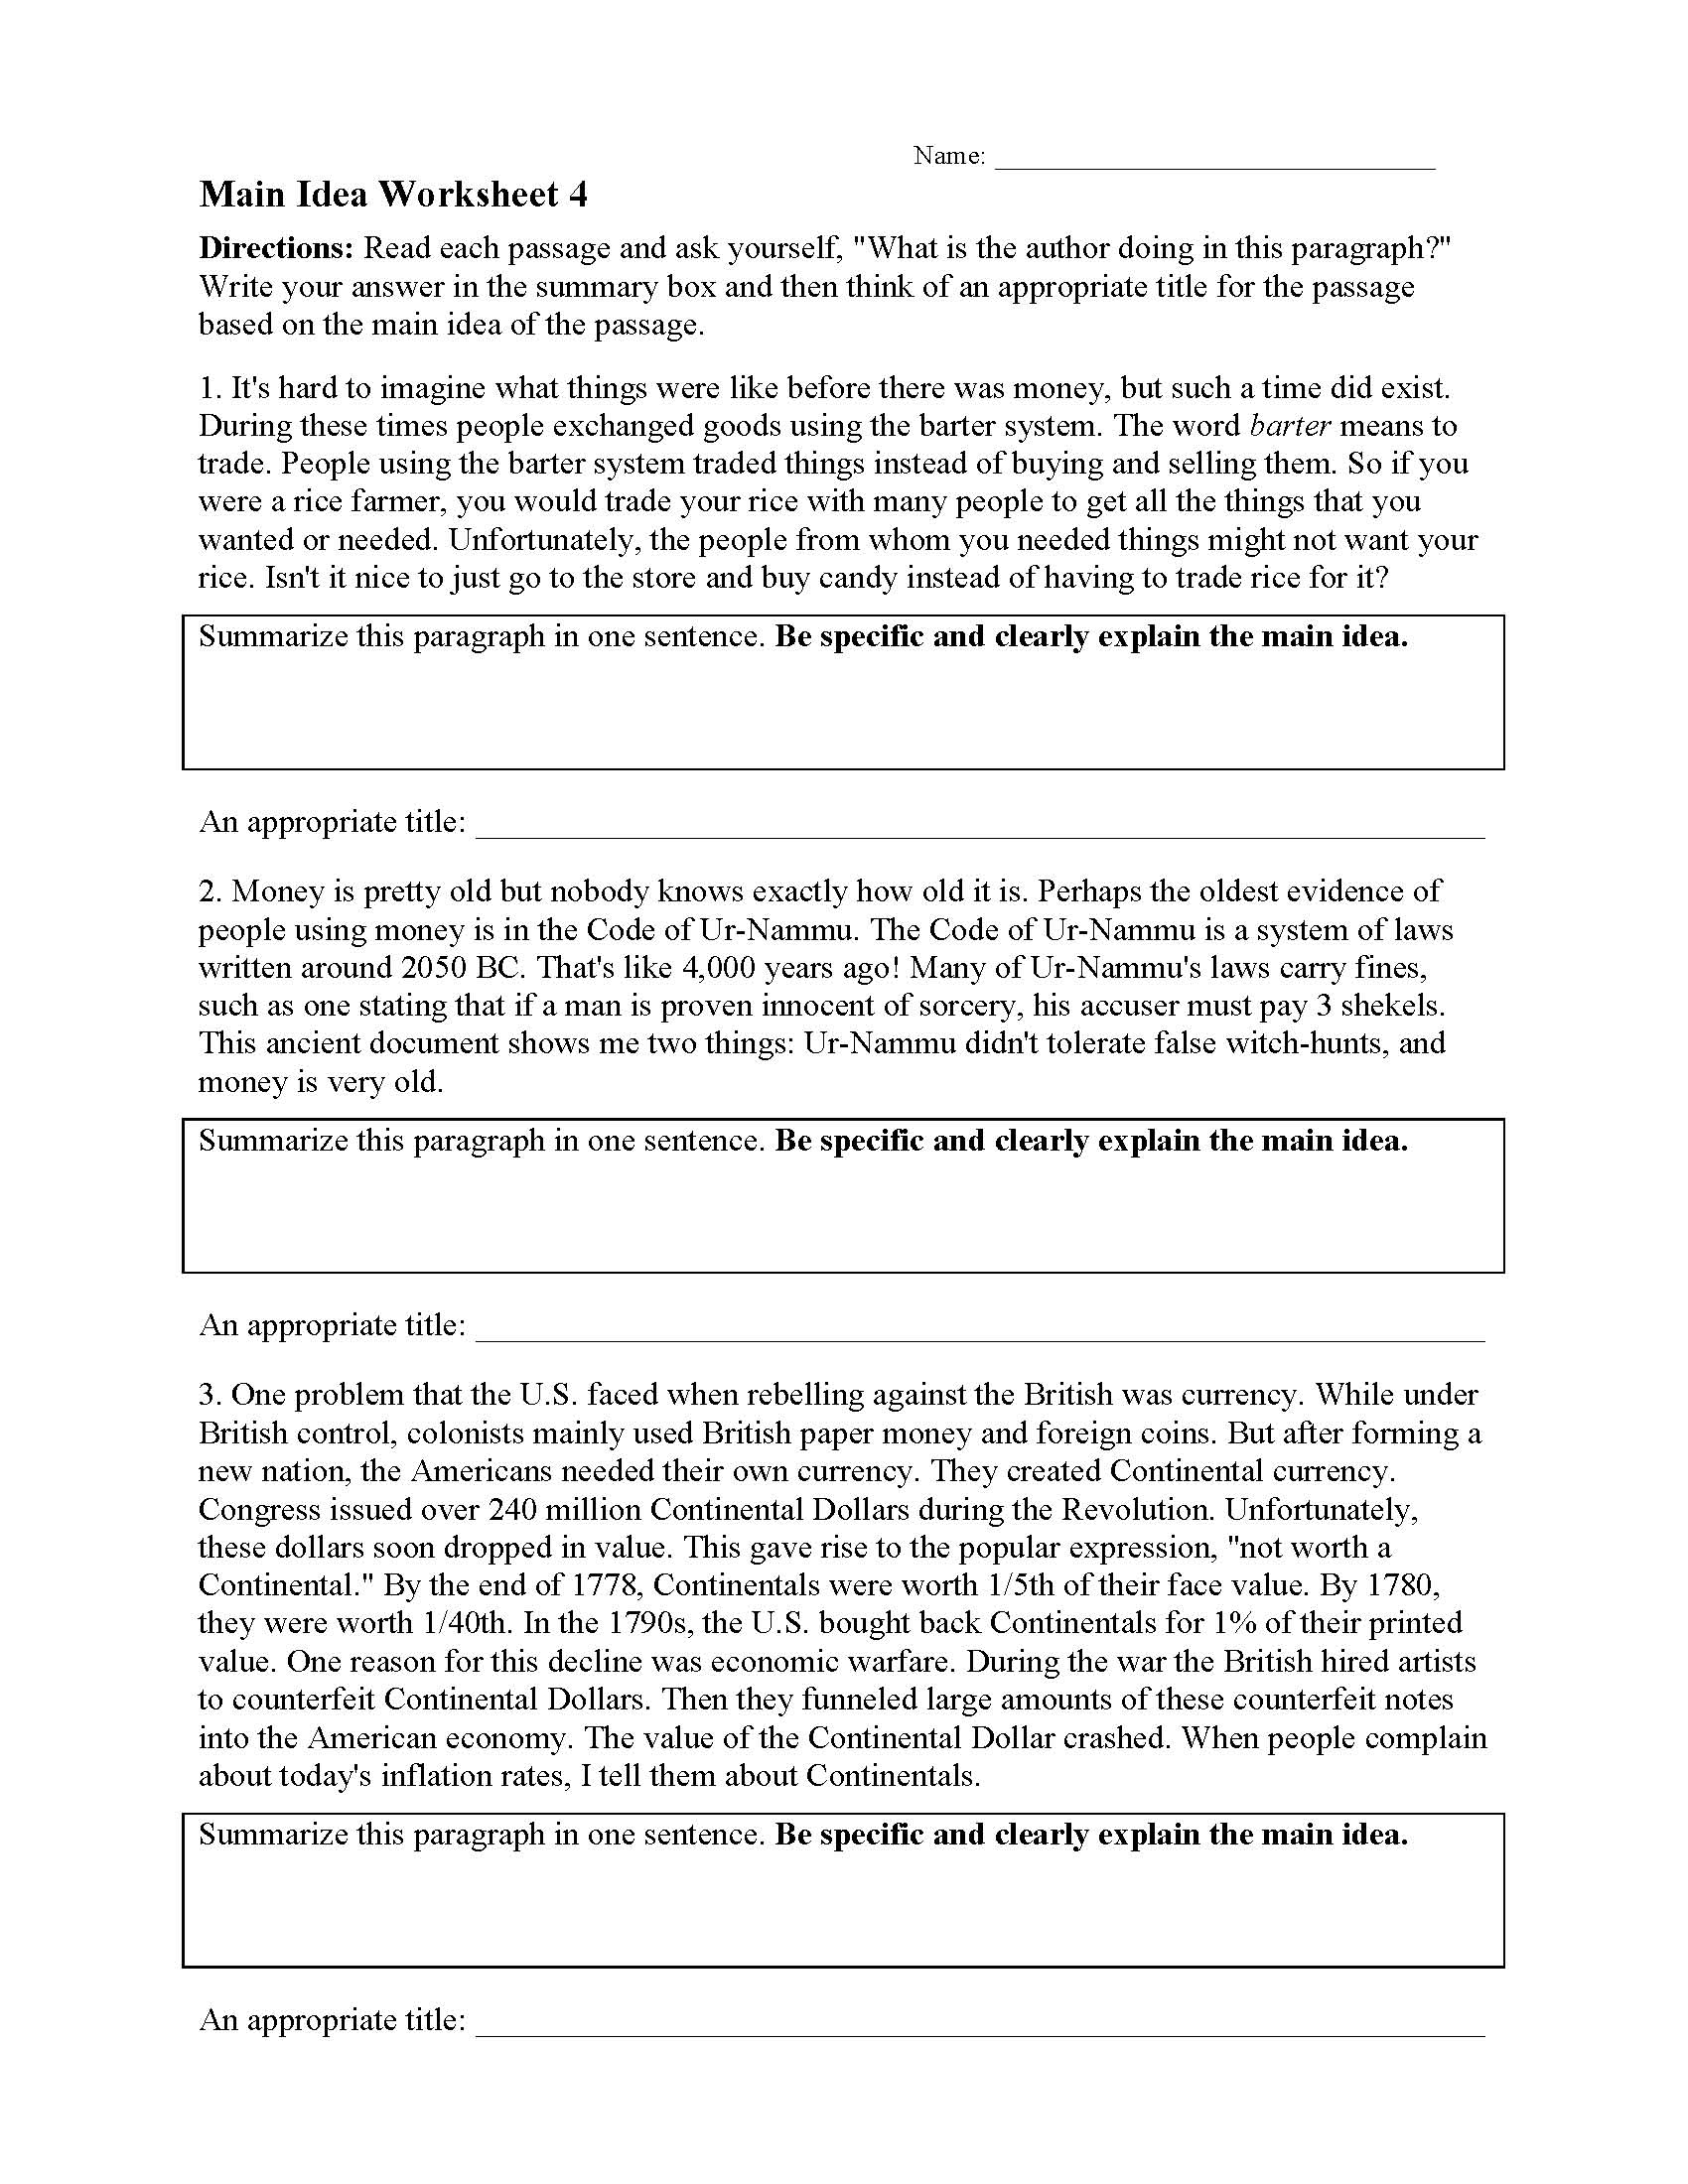 Main Idea Worksheets  Ereading Worksheets Intended For Main Idea Worksheet 5